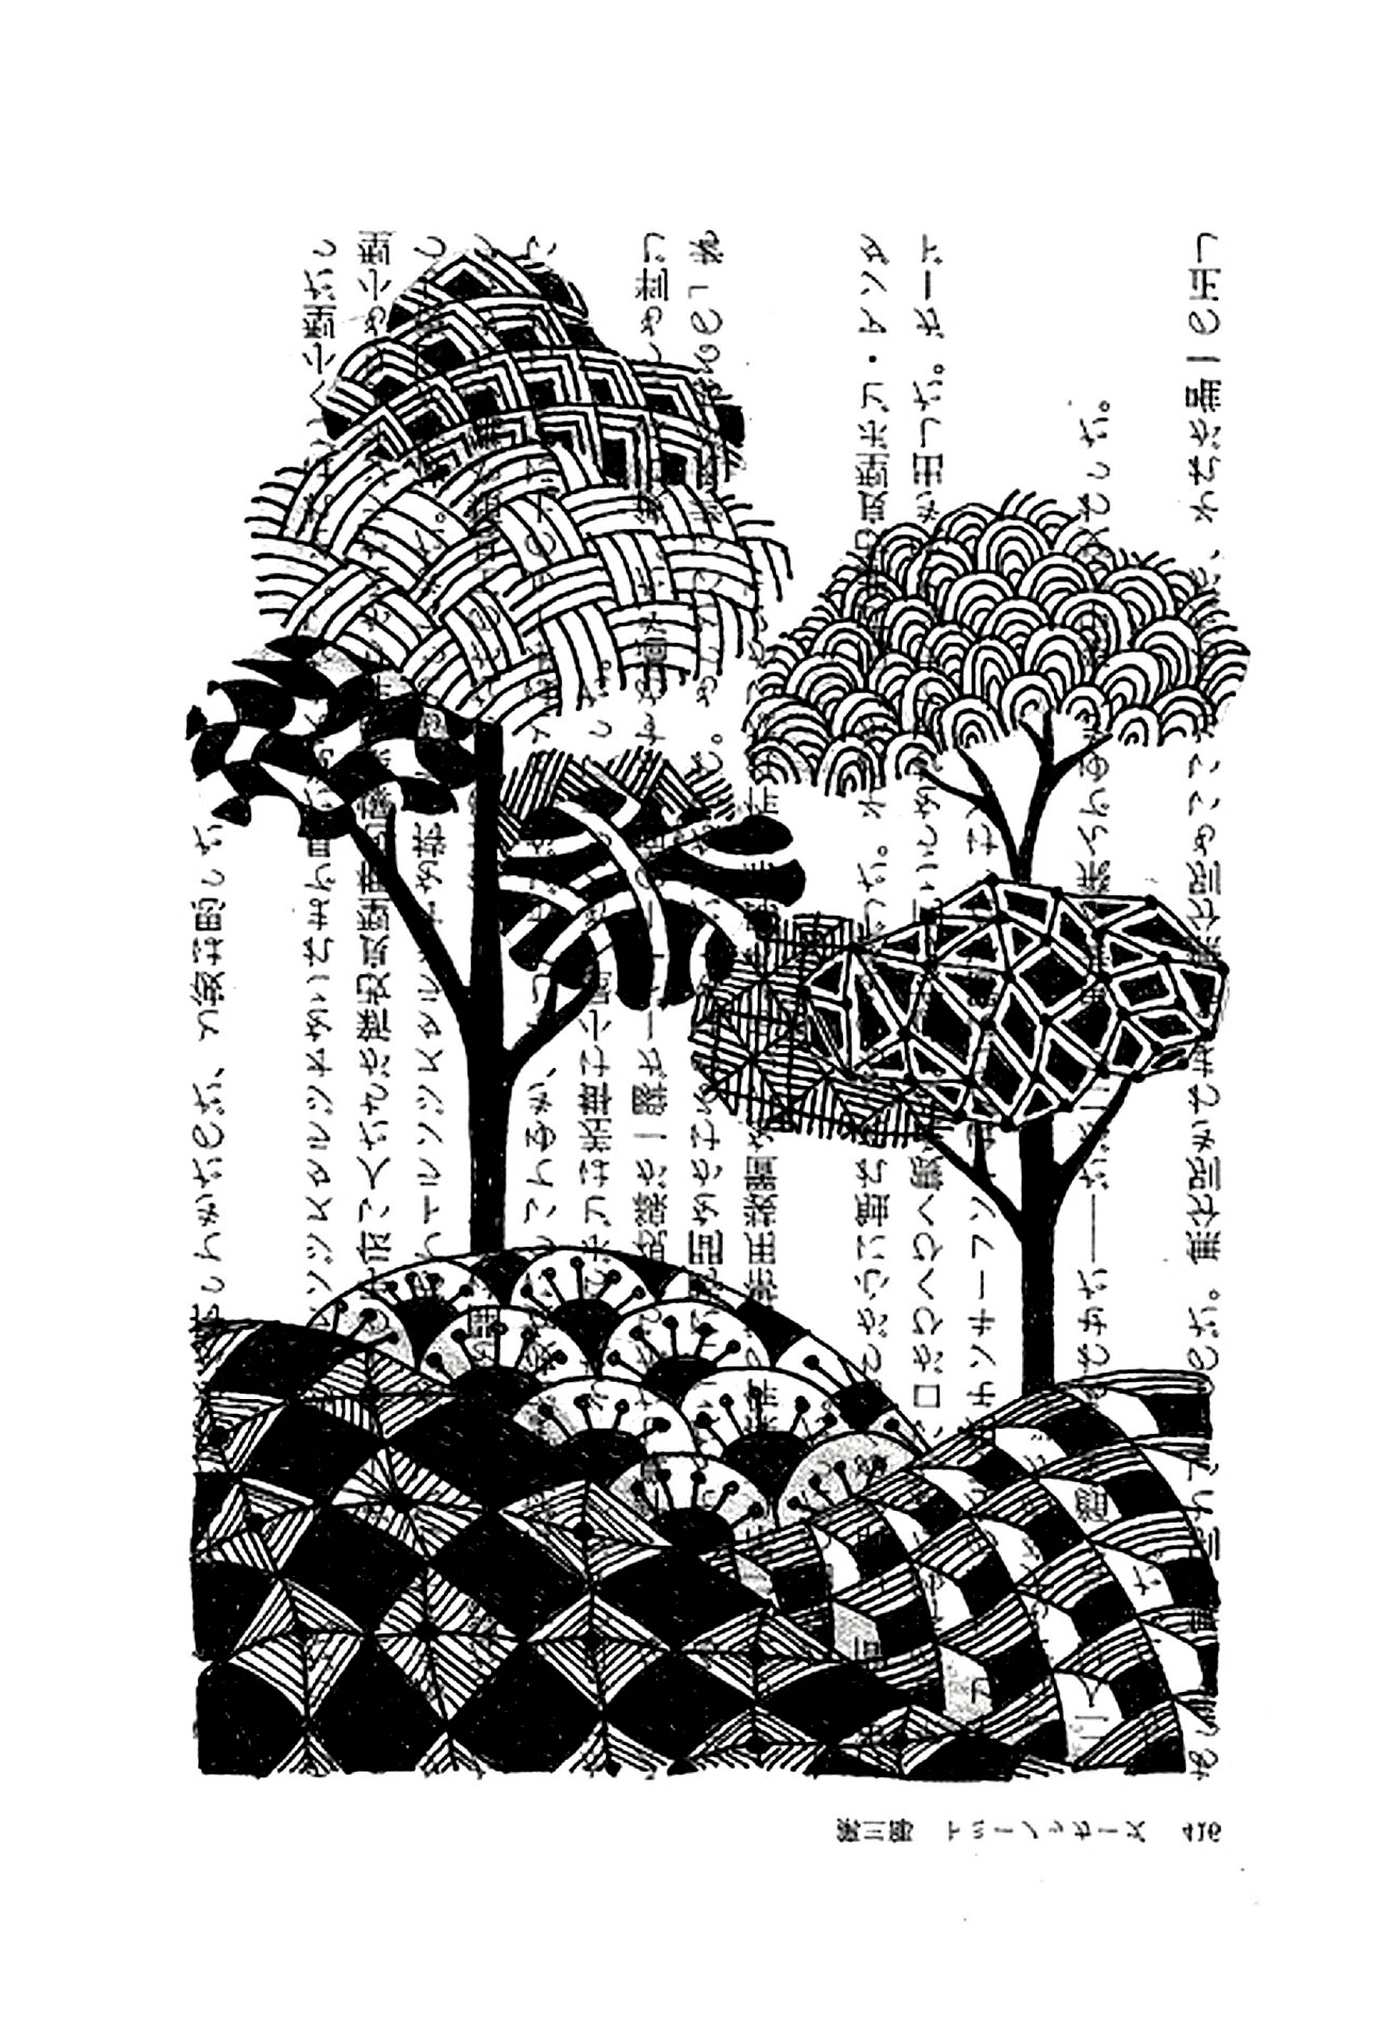  Деревья с японскими книгами 